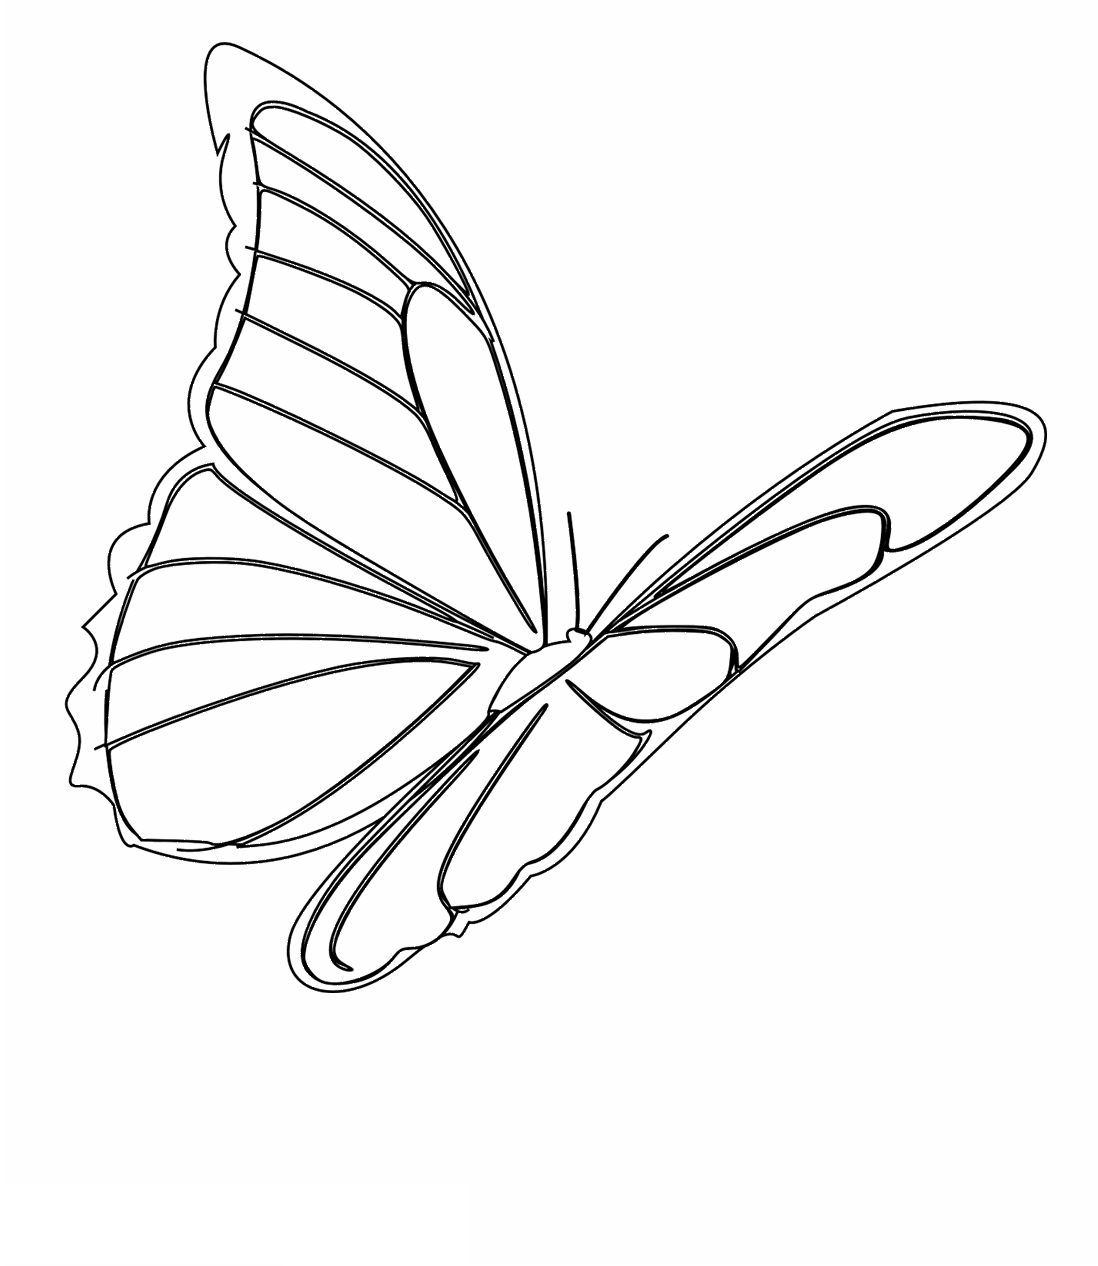 Tranh tô màu con bướm cách điệu bằng đường nét « in hình này